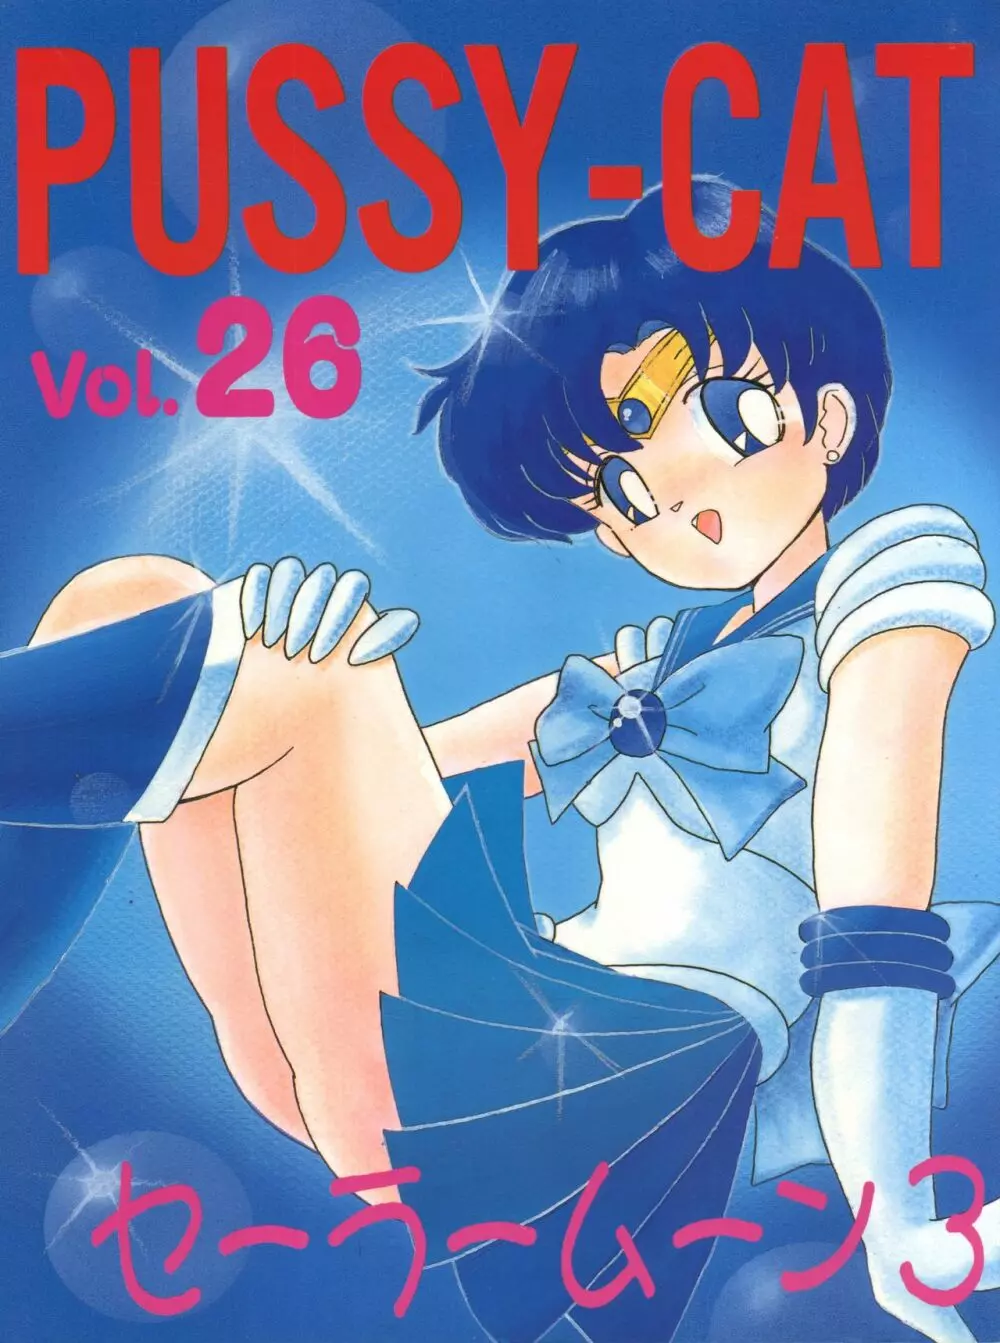 PUSSY-CAT vol.26 セーラームーン3